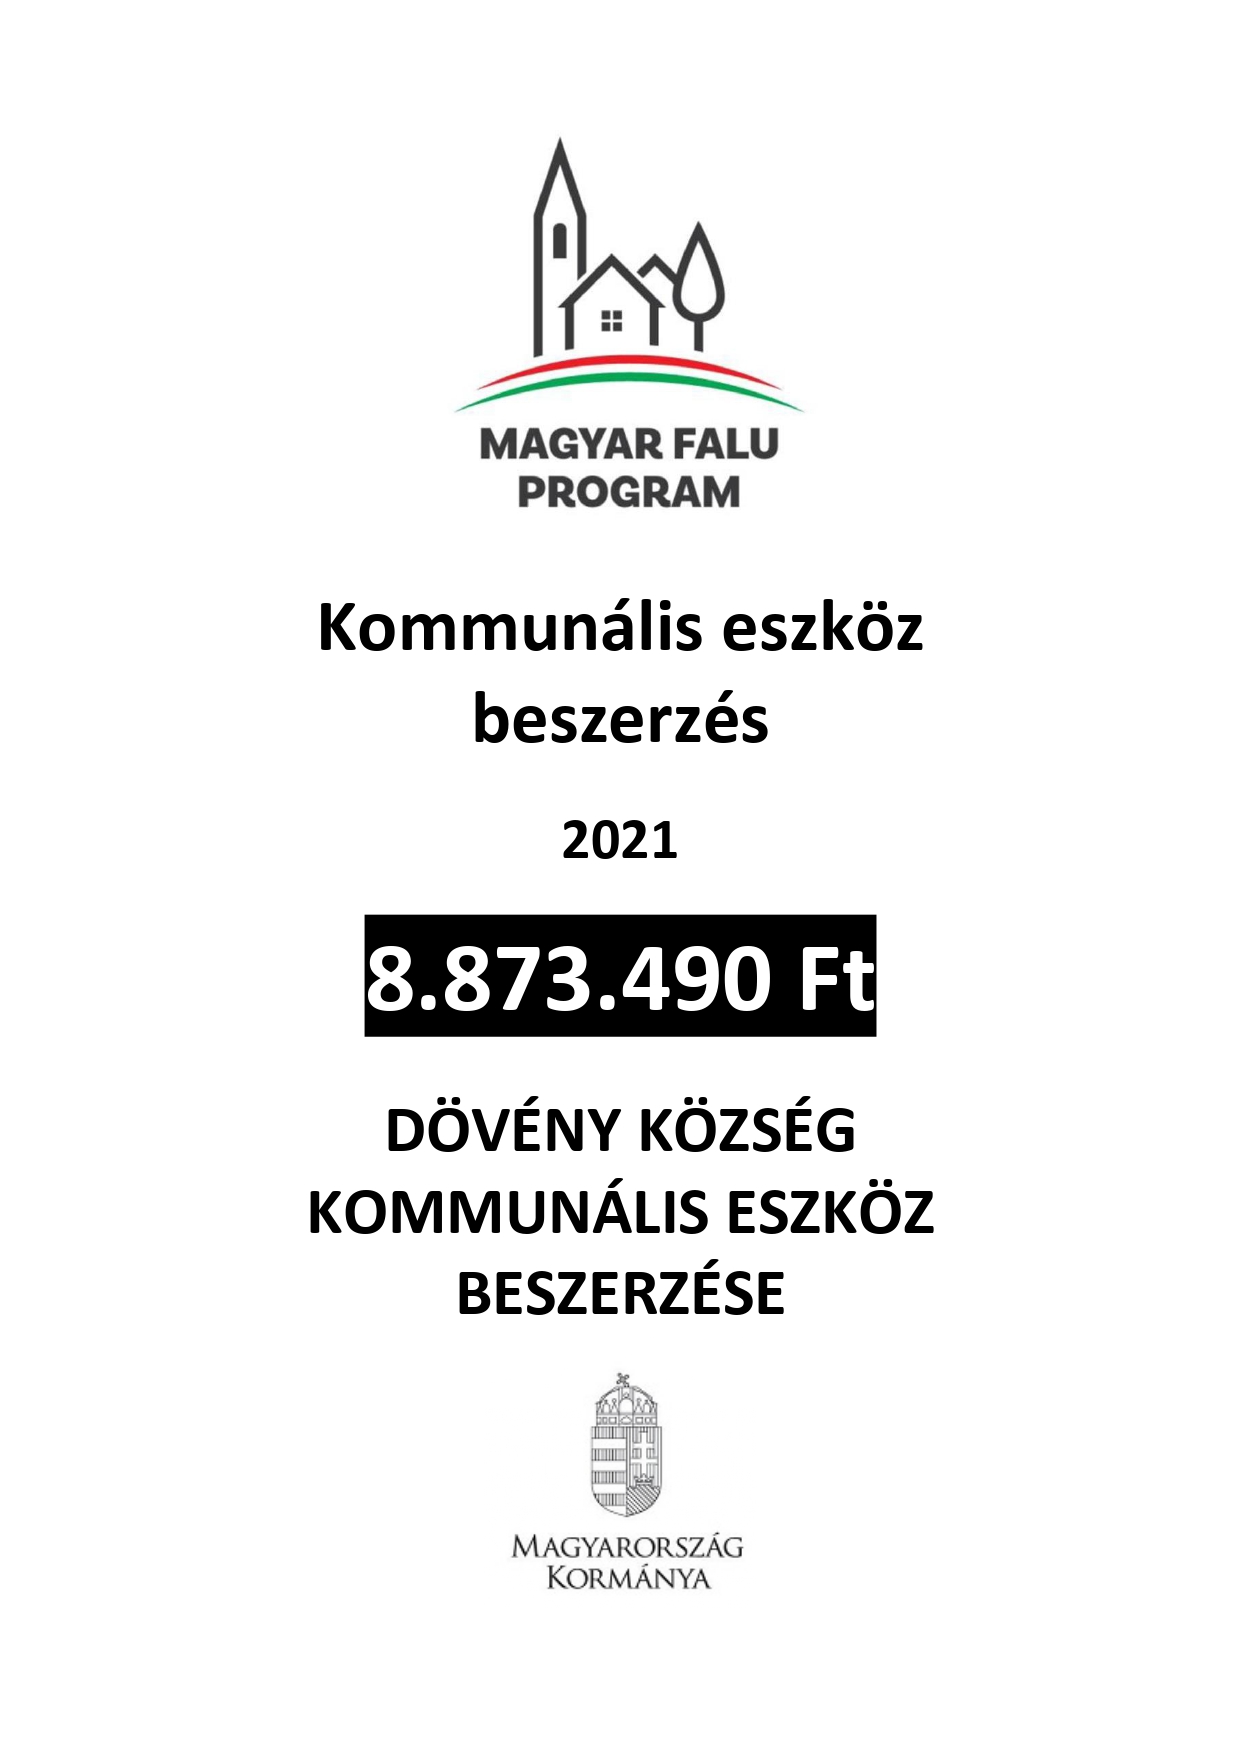 Magyar Falu Program keretében Kommunális eszköz beszerzése - 2021. című MFP-KOEB/2021 kódszámú pályázat